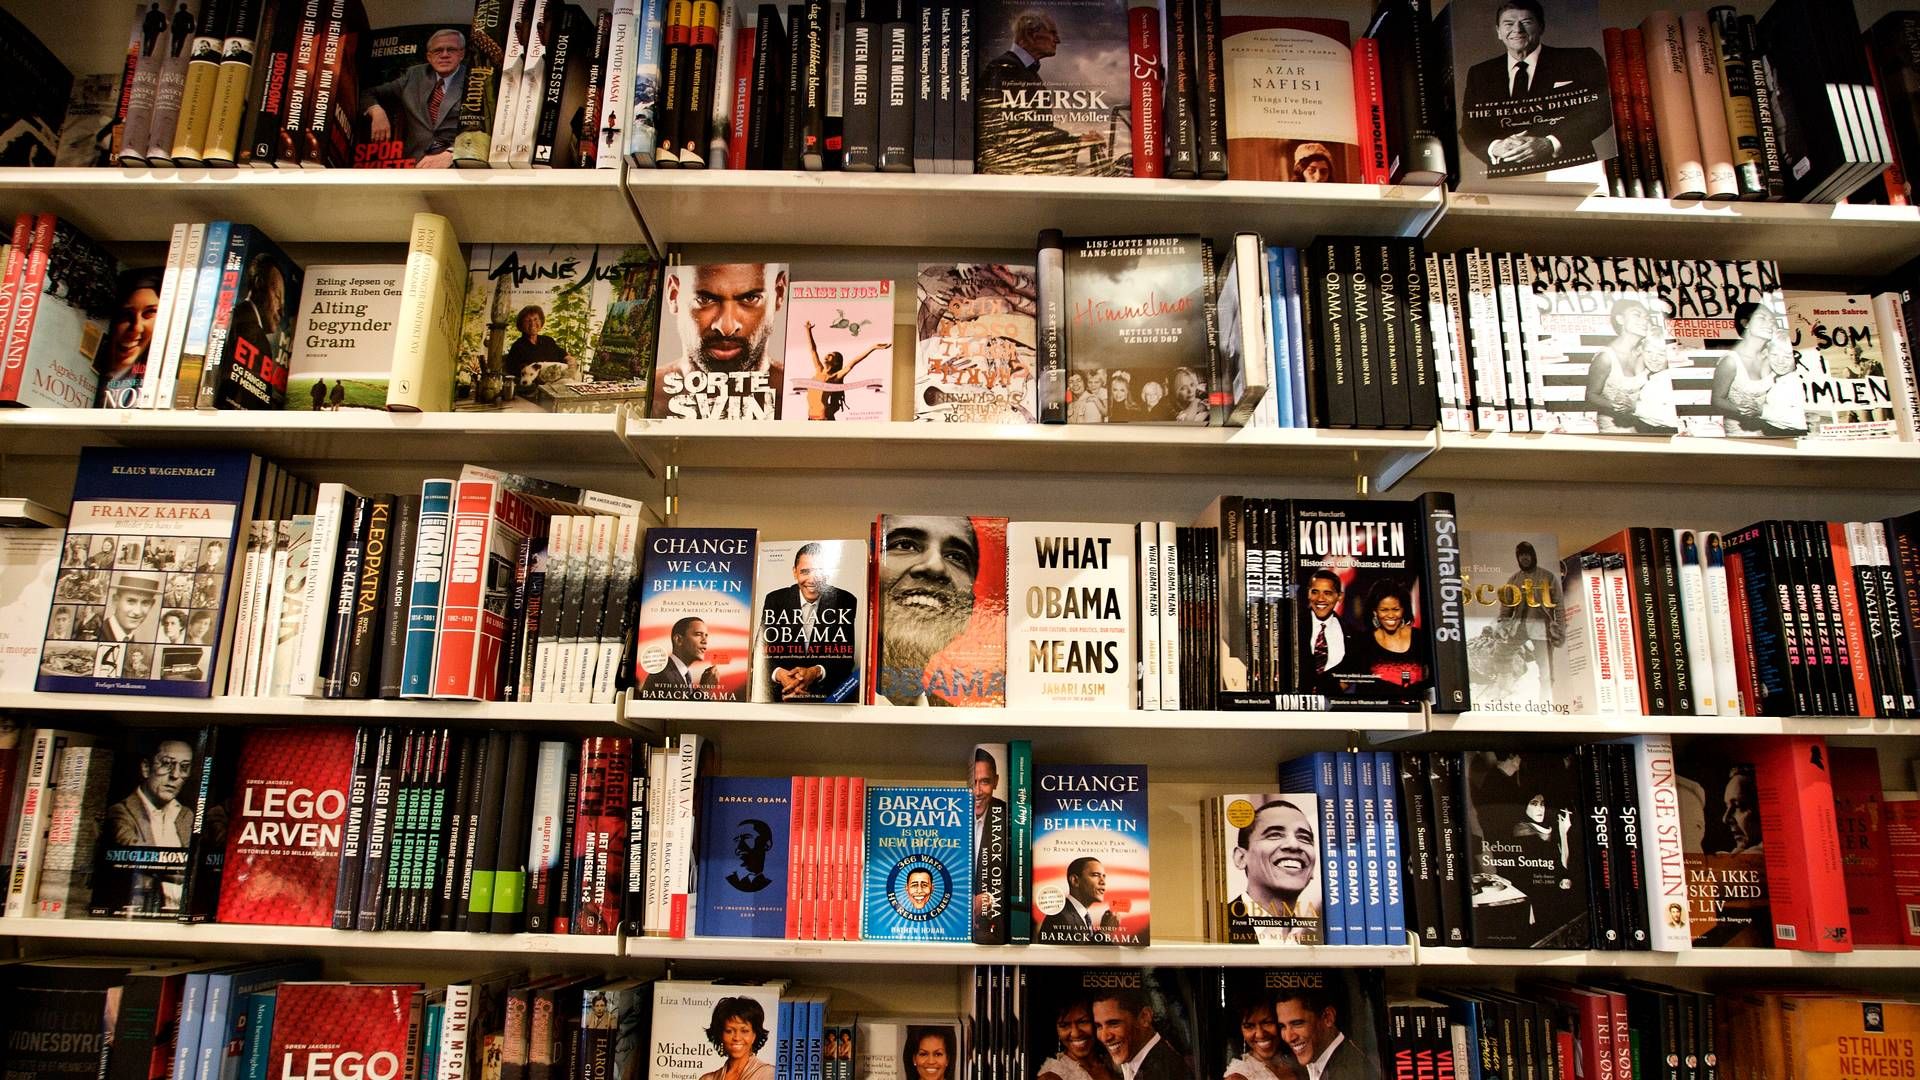 Danmark er eneste land i EU med fuld moms på bøger, mens eksempelvis Sverige har en bogmoms på 6 pct. og Norge, Irland og Storbritannien helt har fjernet momsen på bøger. | Foto: Jens Dresling/Politiken/Ritzau Scanpix